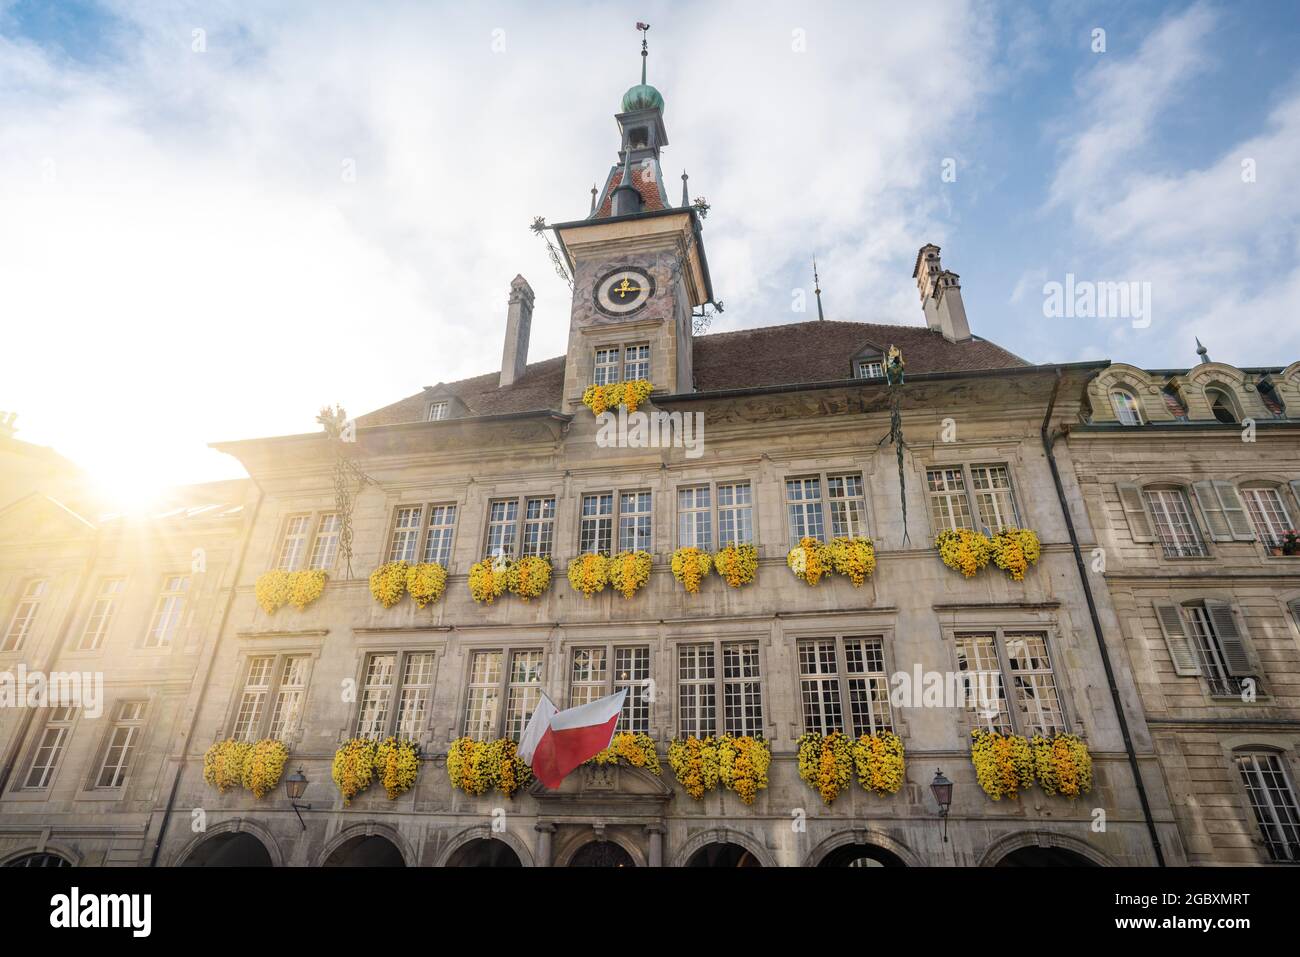 Hôtel de ville de Lausanne à la place de la Palud - Lausanne, Suisse Banque D'Images